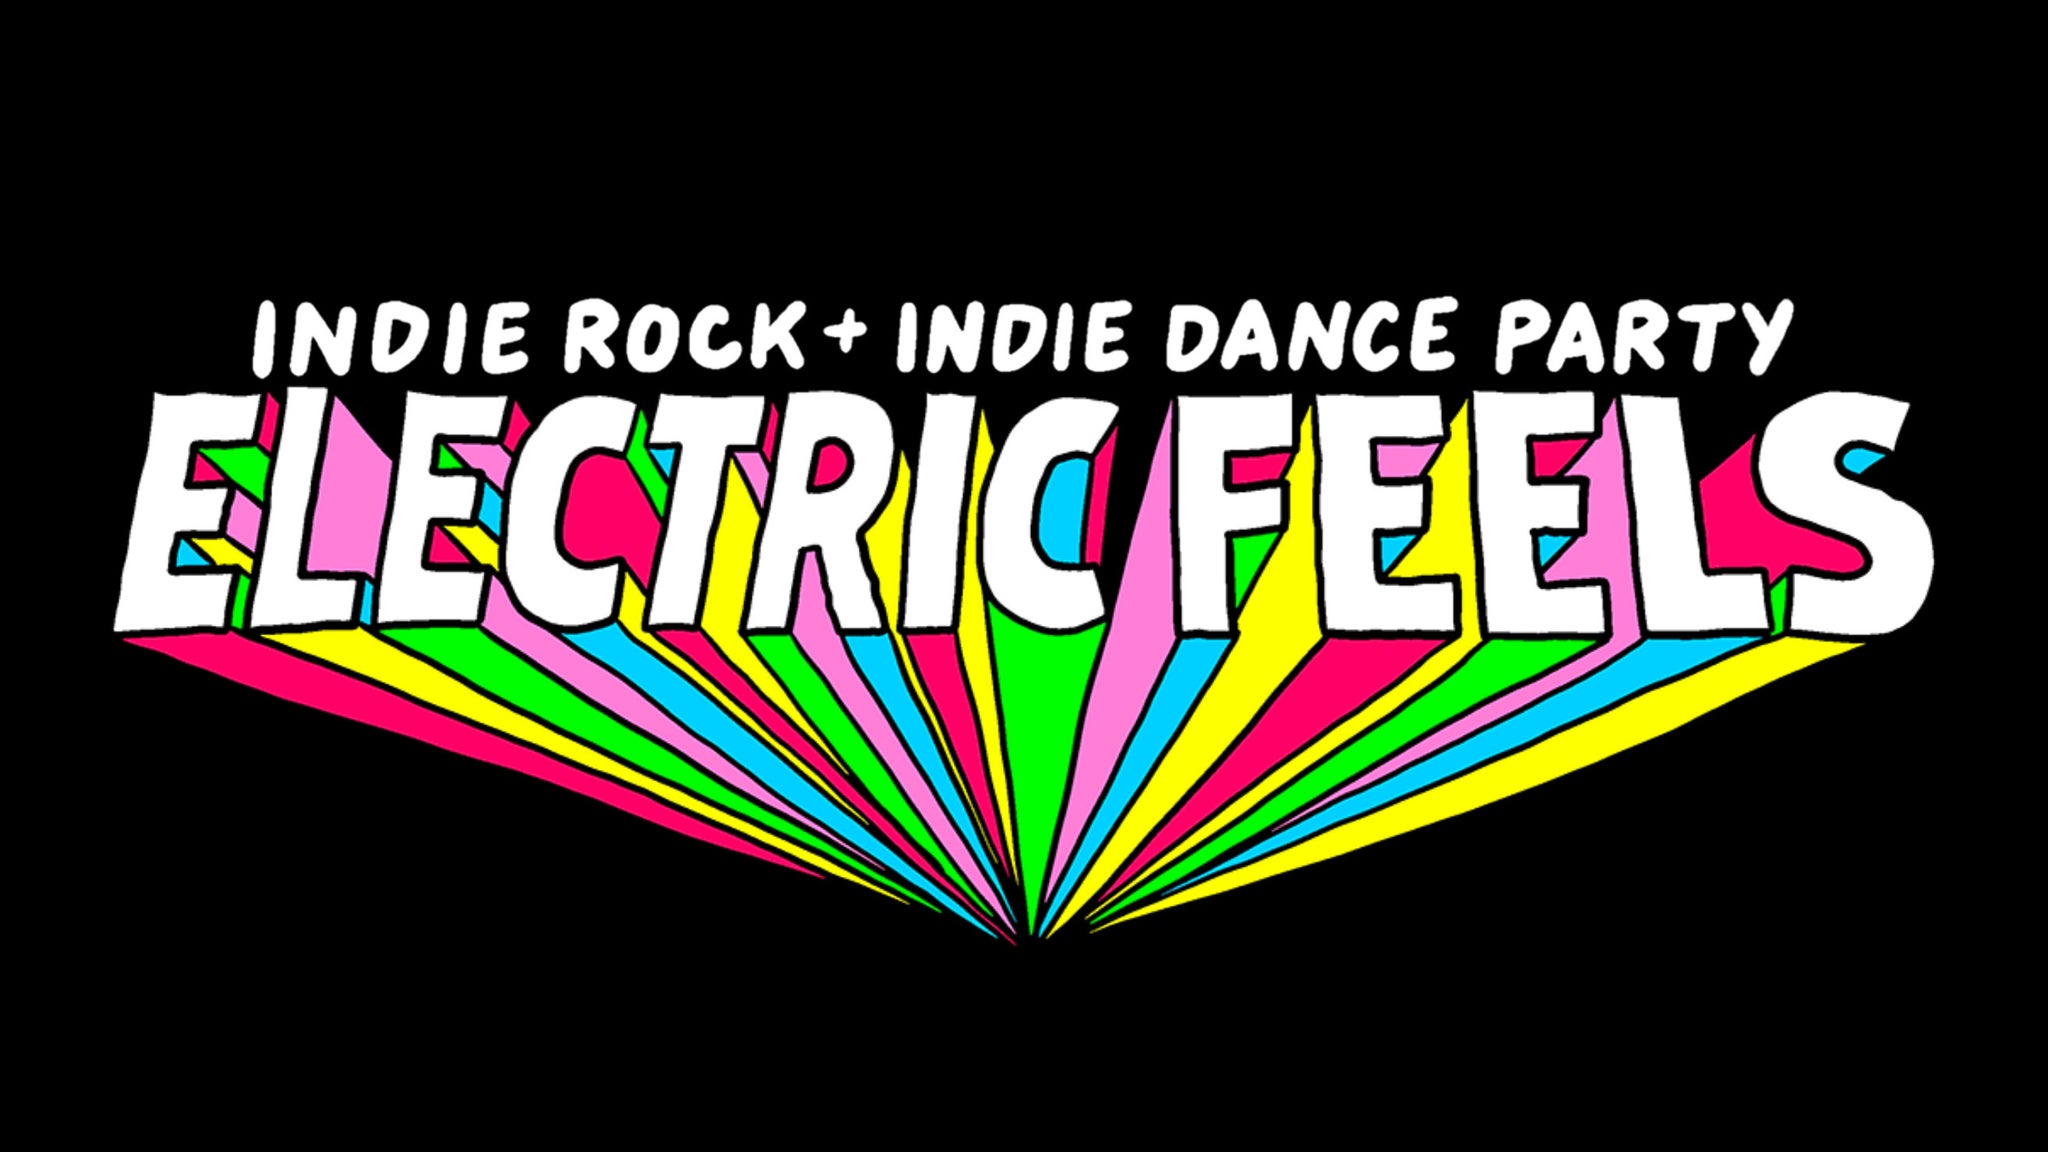 Electric Feels: Indie Rock + Indie Dance Party 18+